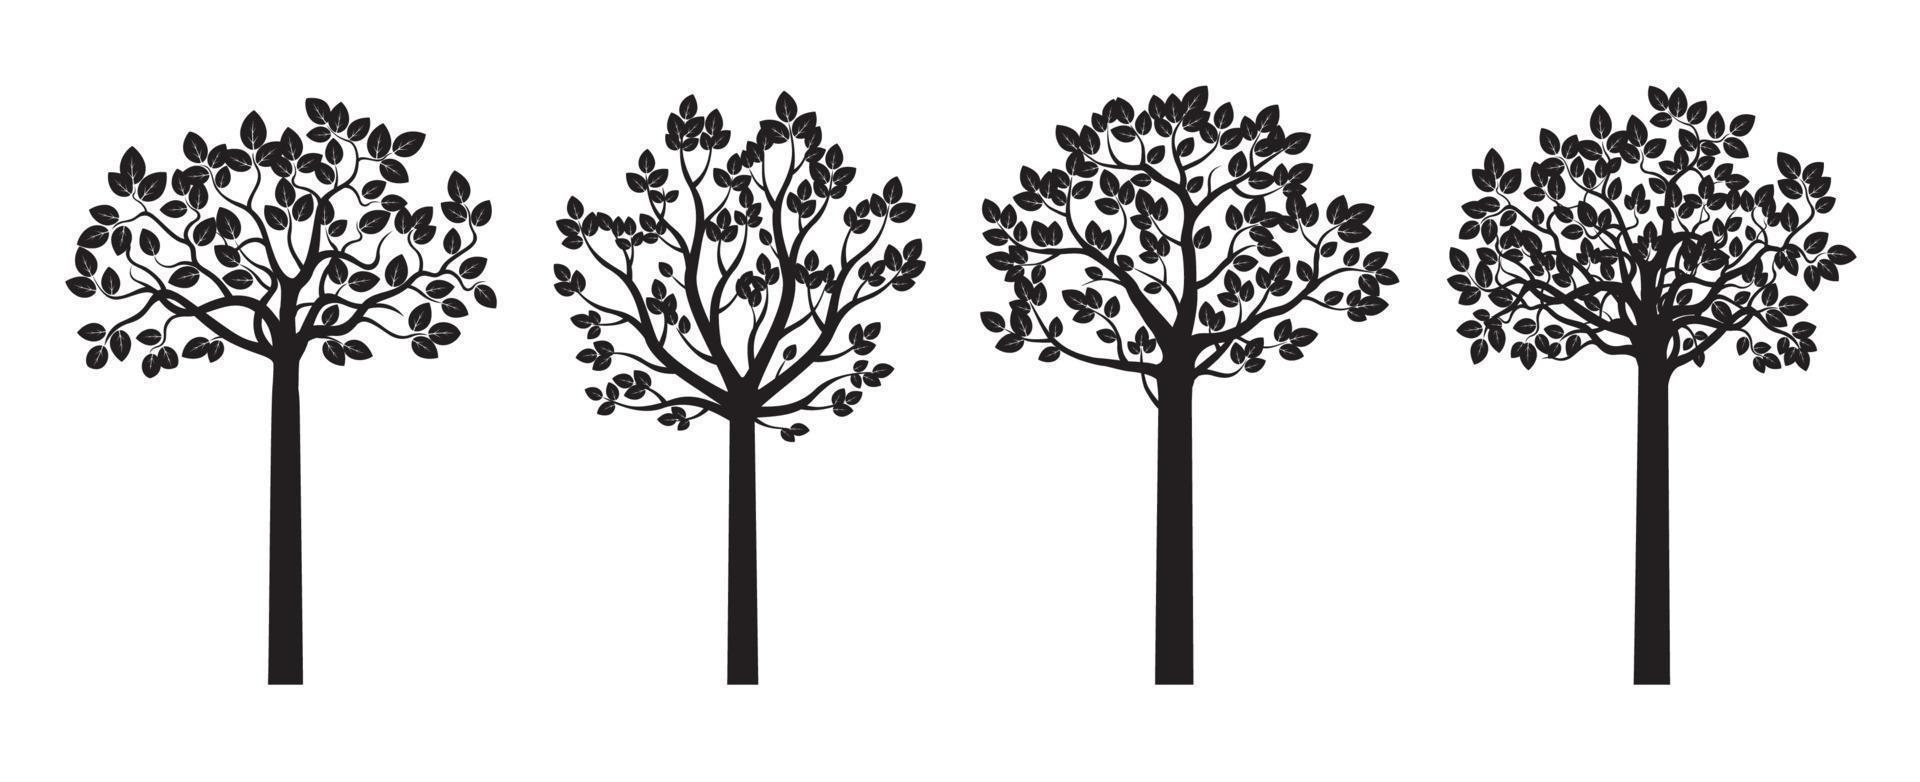 définir des arbres noirs isolés. illustration vectorielle eps. vecteur